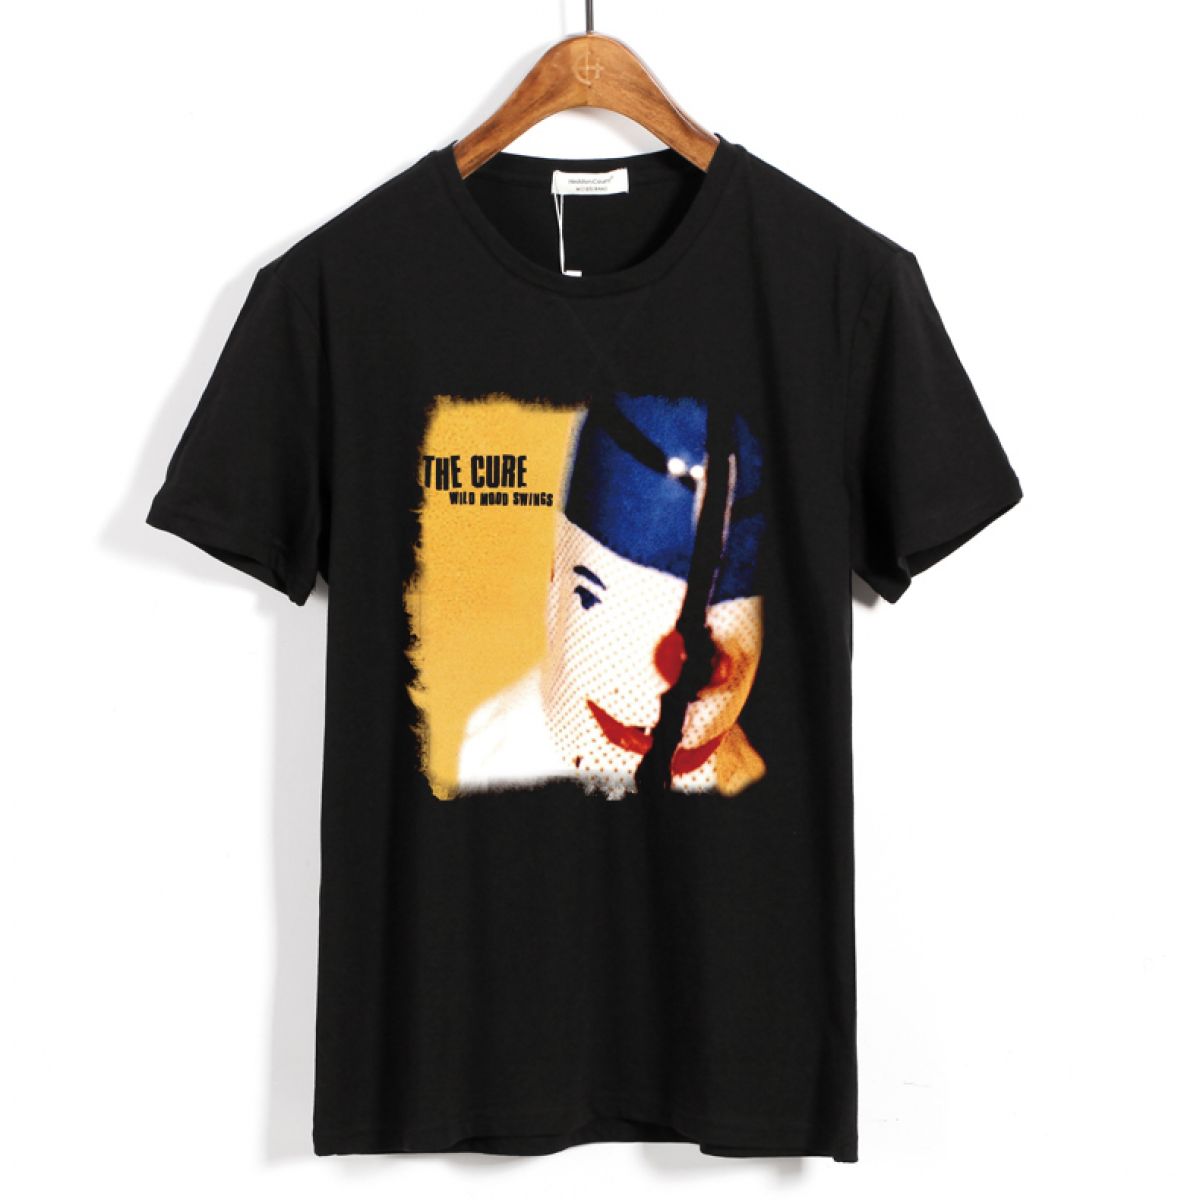 売れ筋新商品 Mood Wild Cure The 90s Swings ザキュアー Tシャツ T